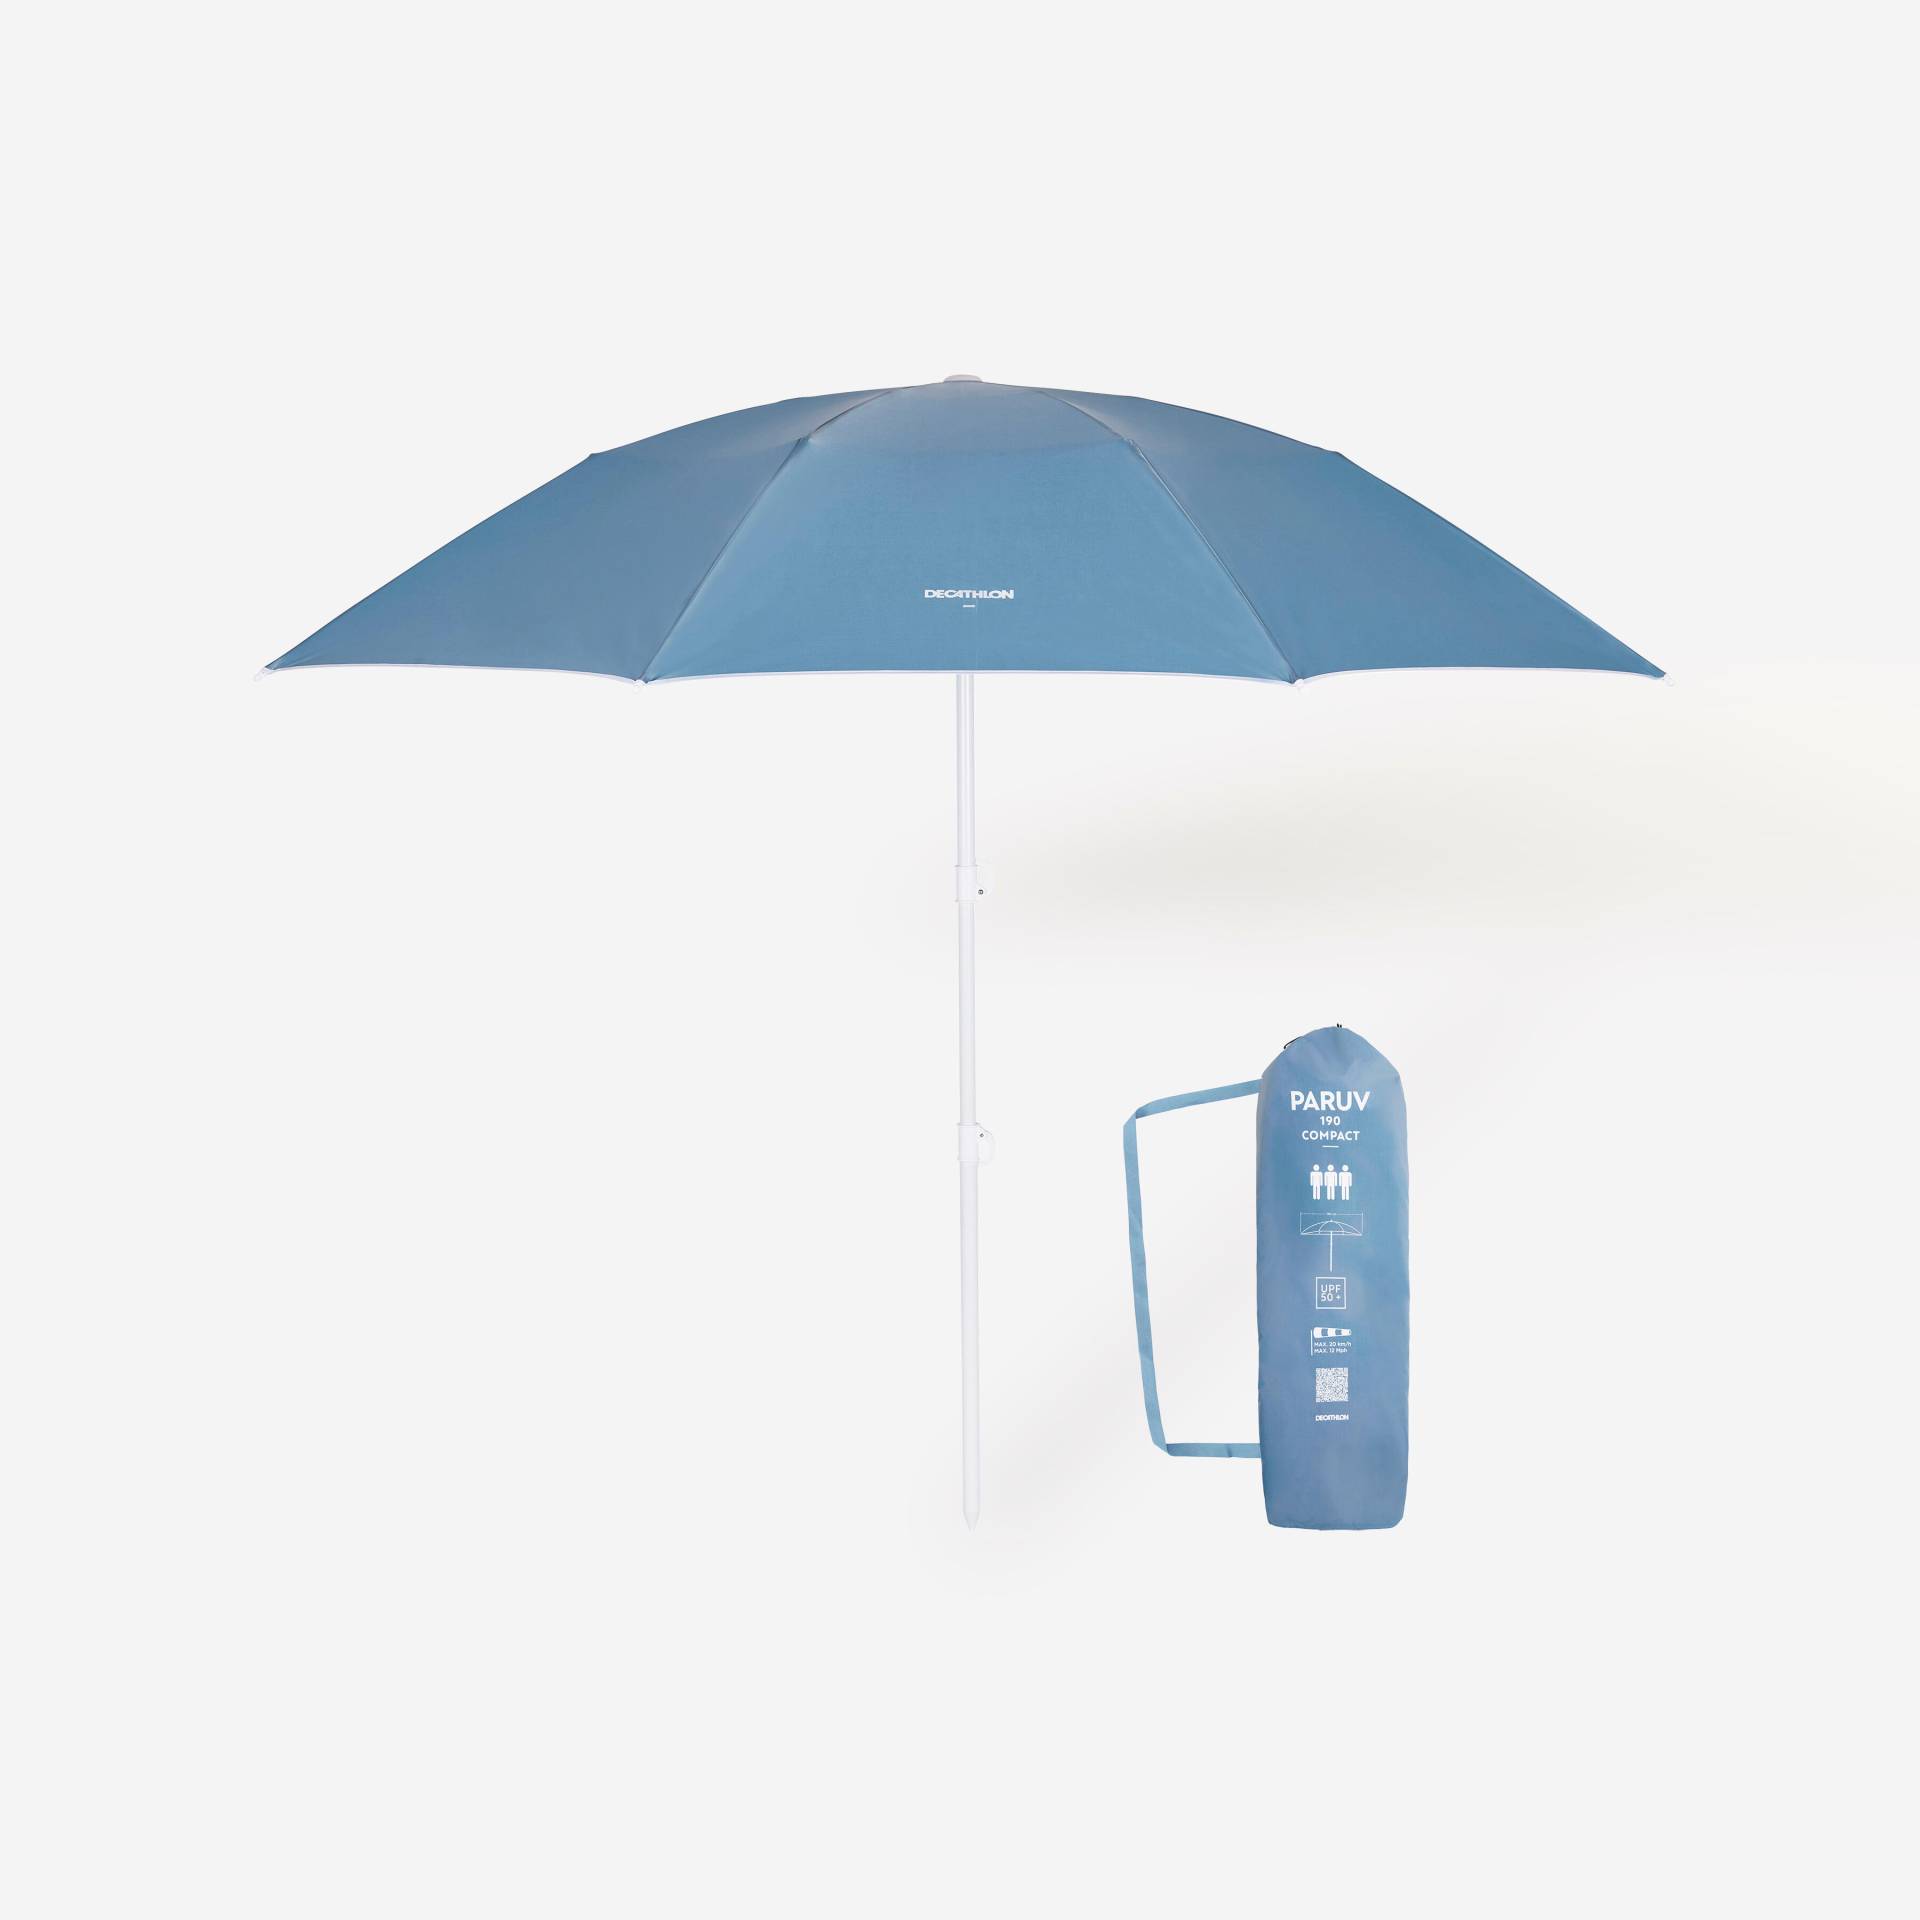 Sonnenschirm Strandschirm kompakt UPF 50+ - Paruv 190 für 3 Personen grau von Decathlon